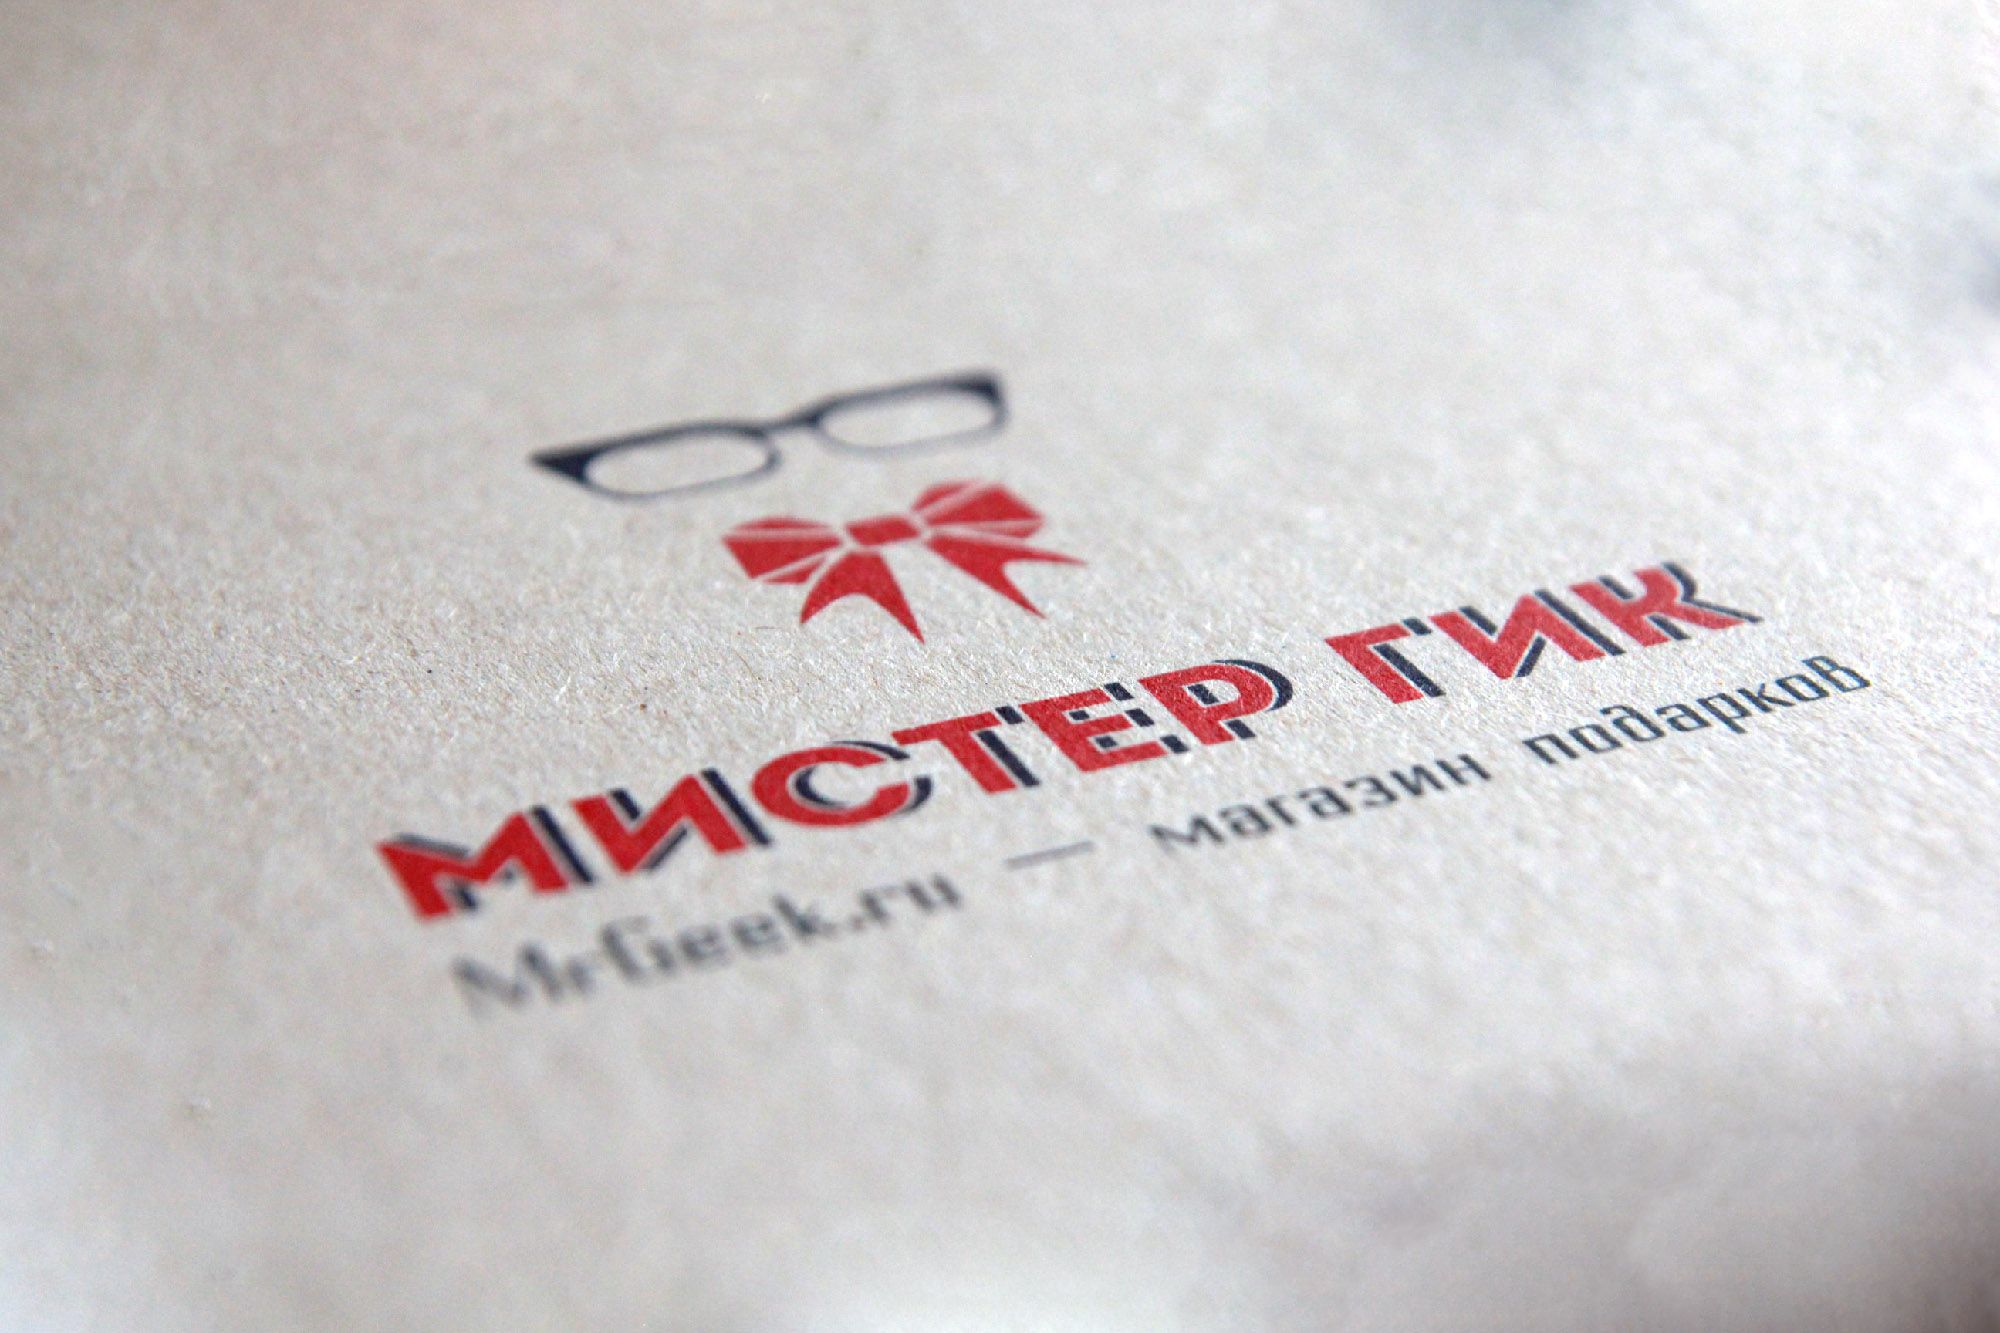 Логотип для магазина подарков - дизайнер mischa3